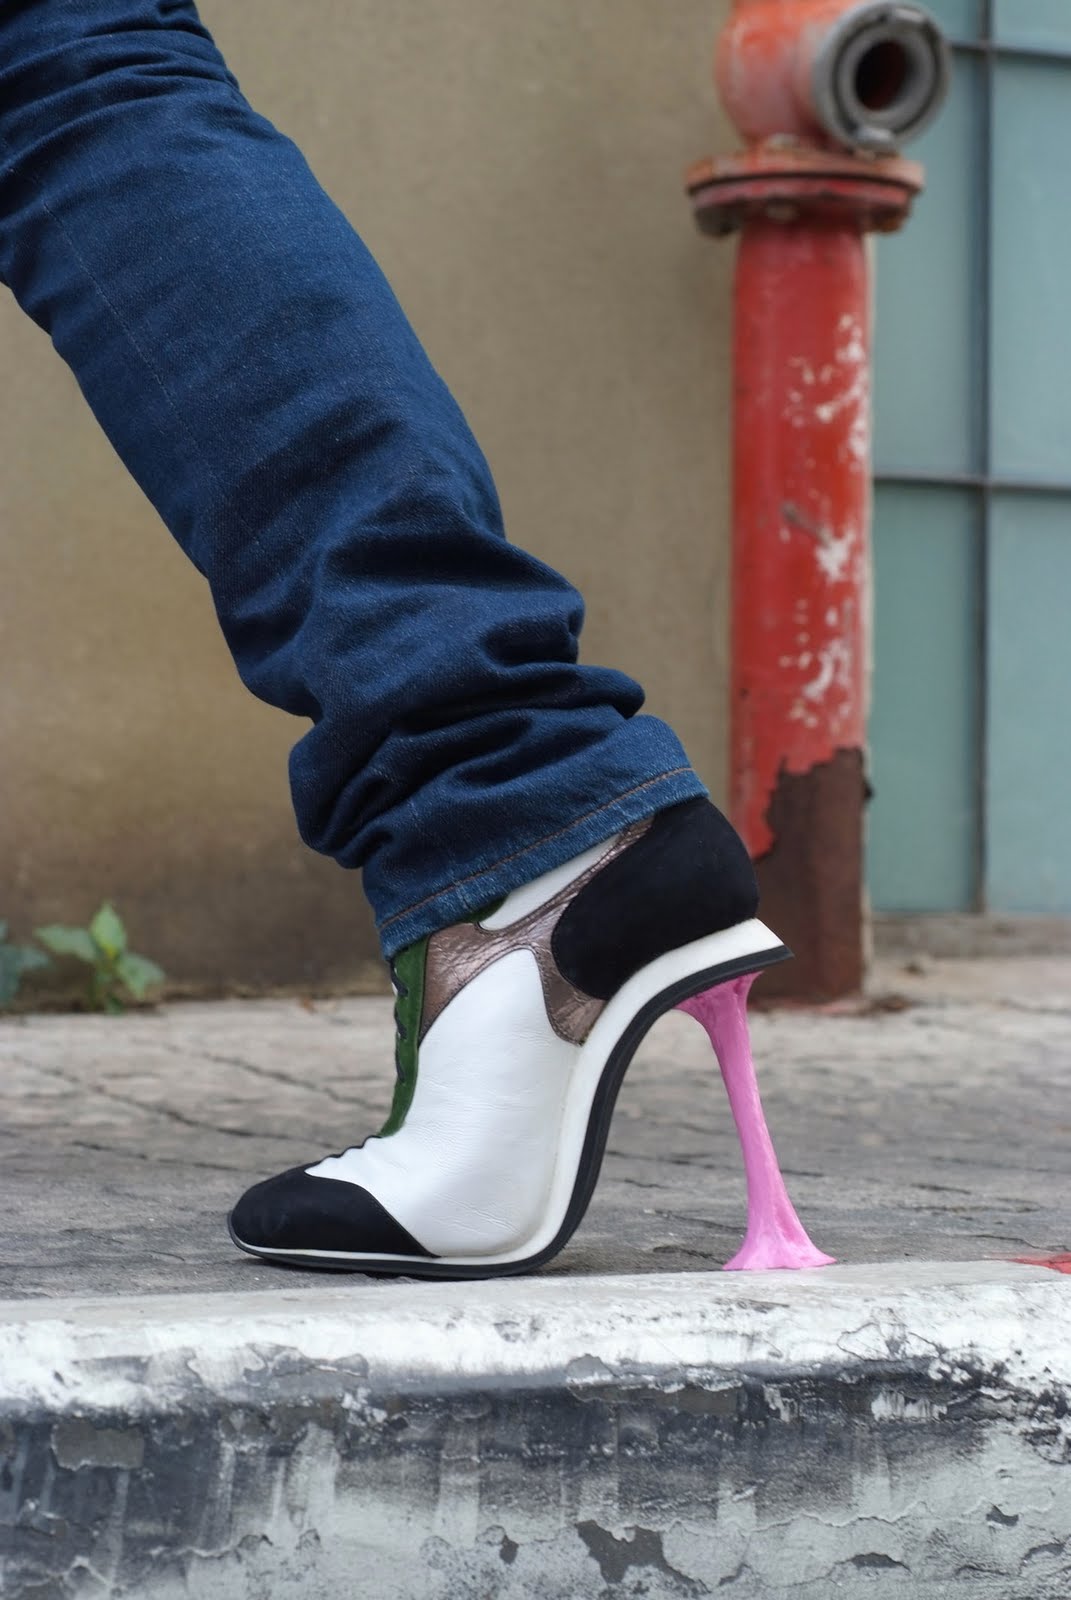 artistic-footwear-gum.jpg